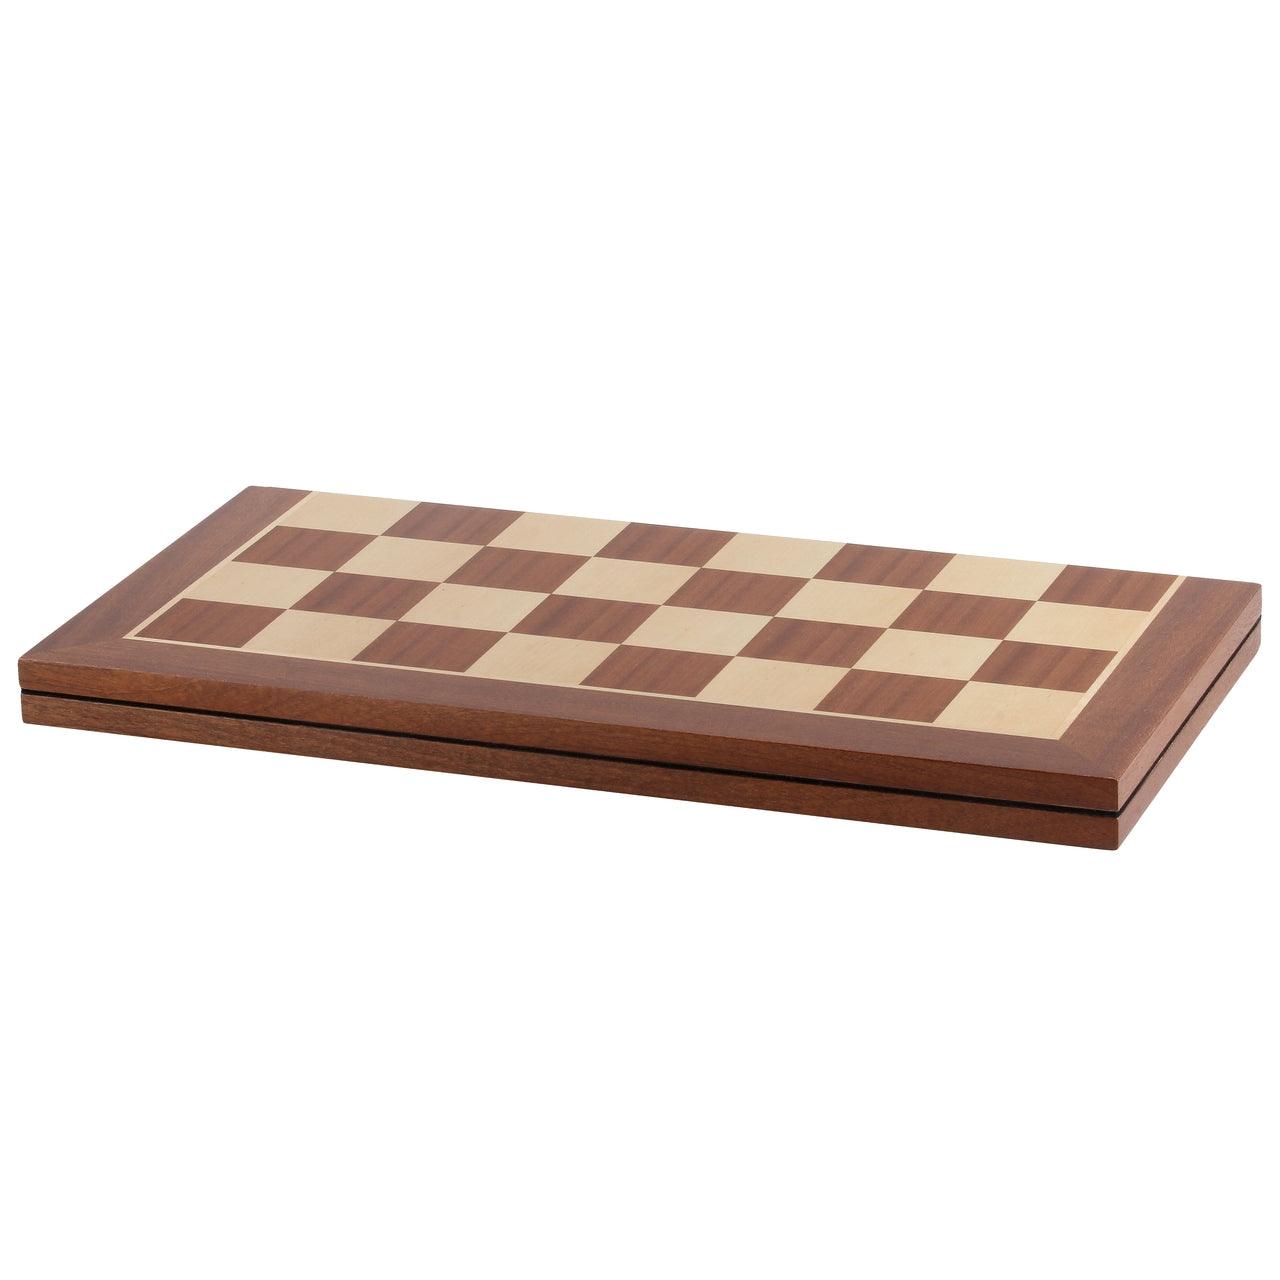 Folding Chess board MAHOGANY